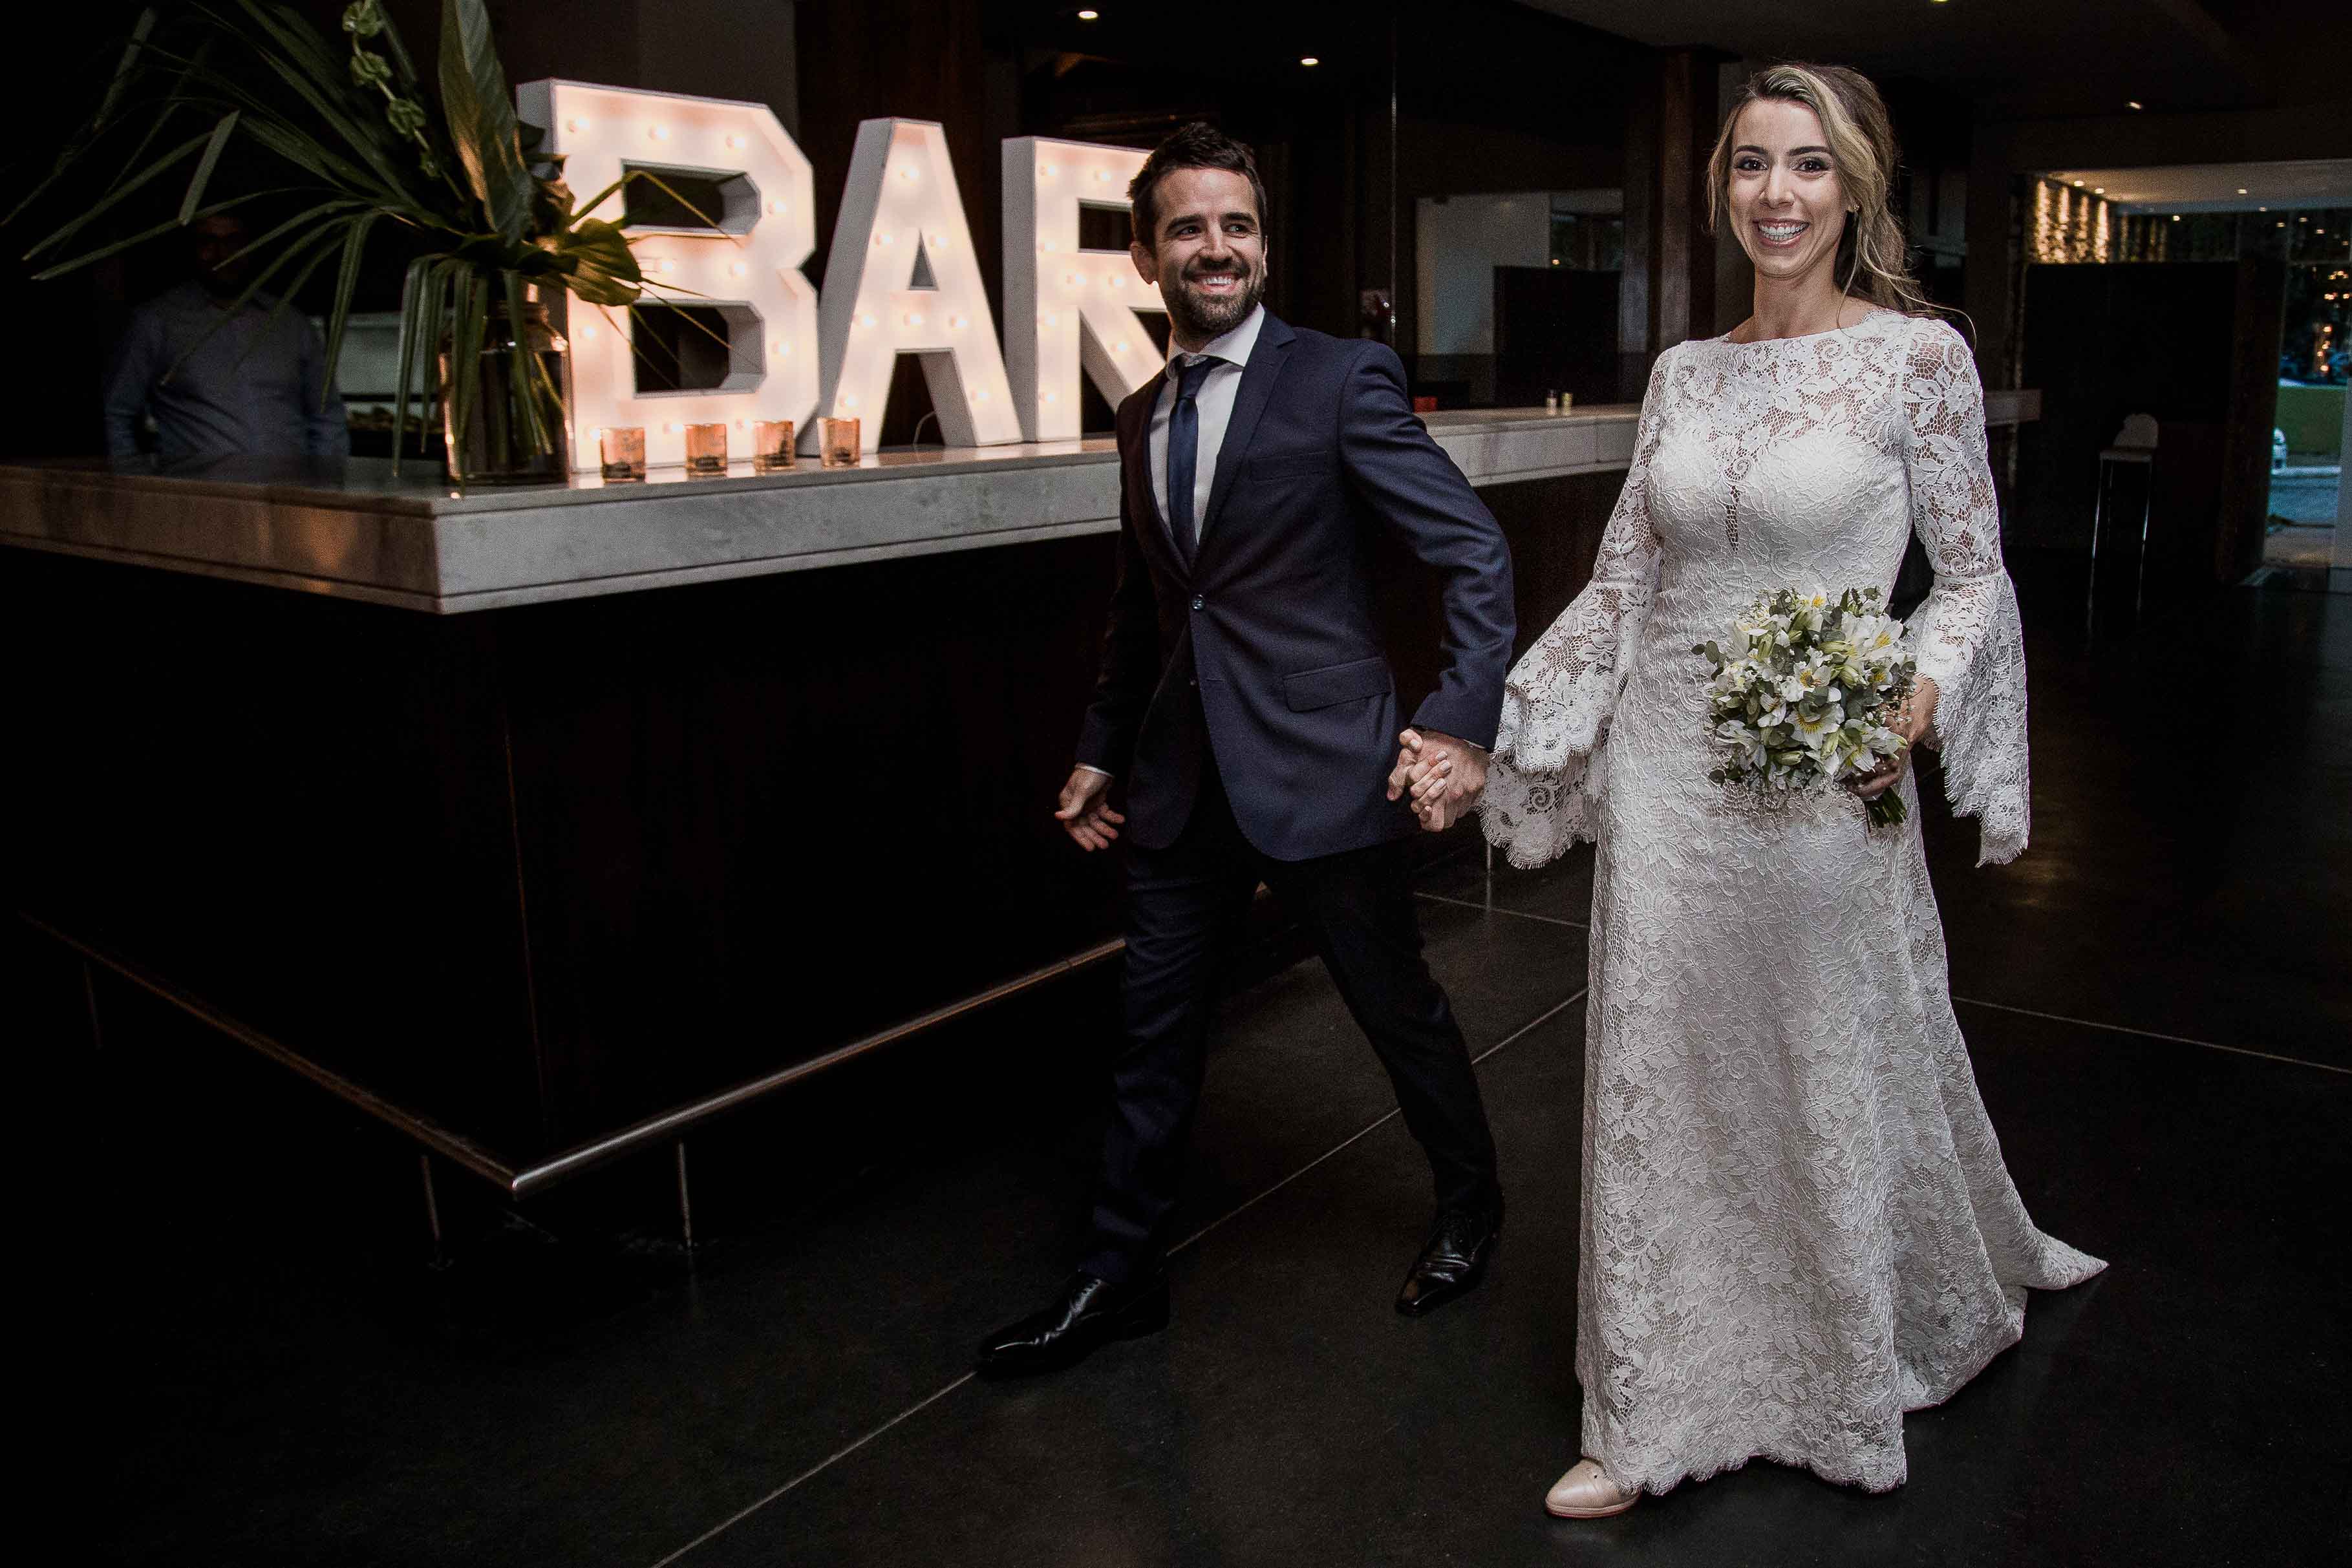 Fotos de la boda de Bel y Pablo en Rosario realizadas por Bucle Fotografias Flor Bosio y Caro Clerici